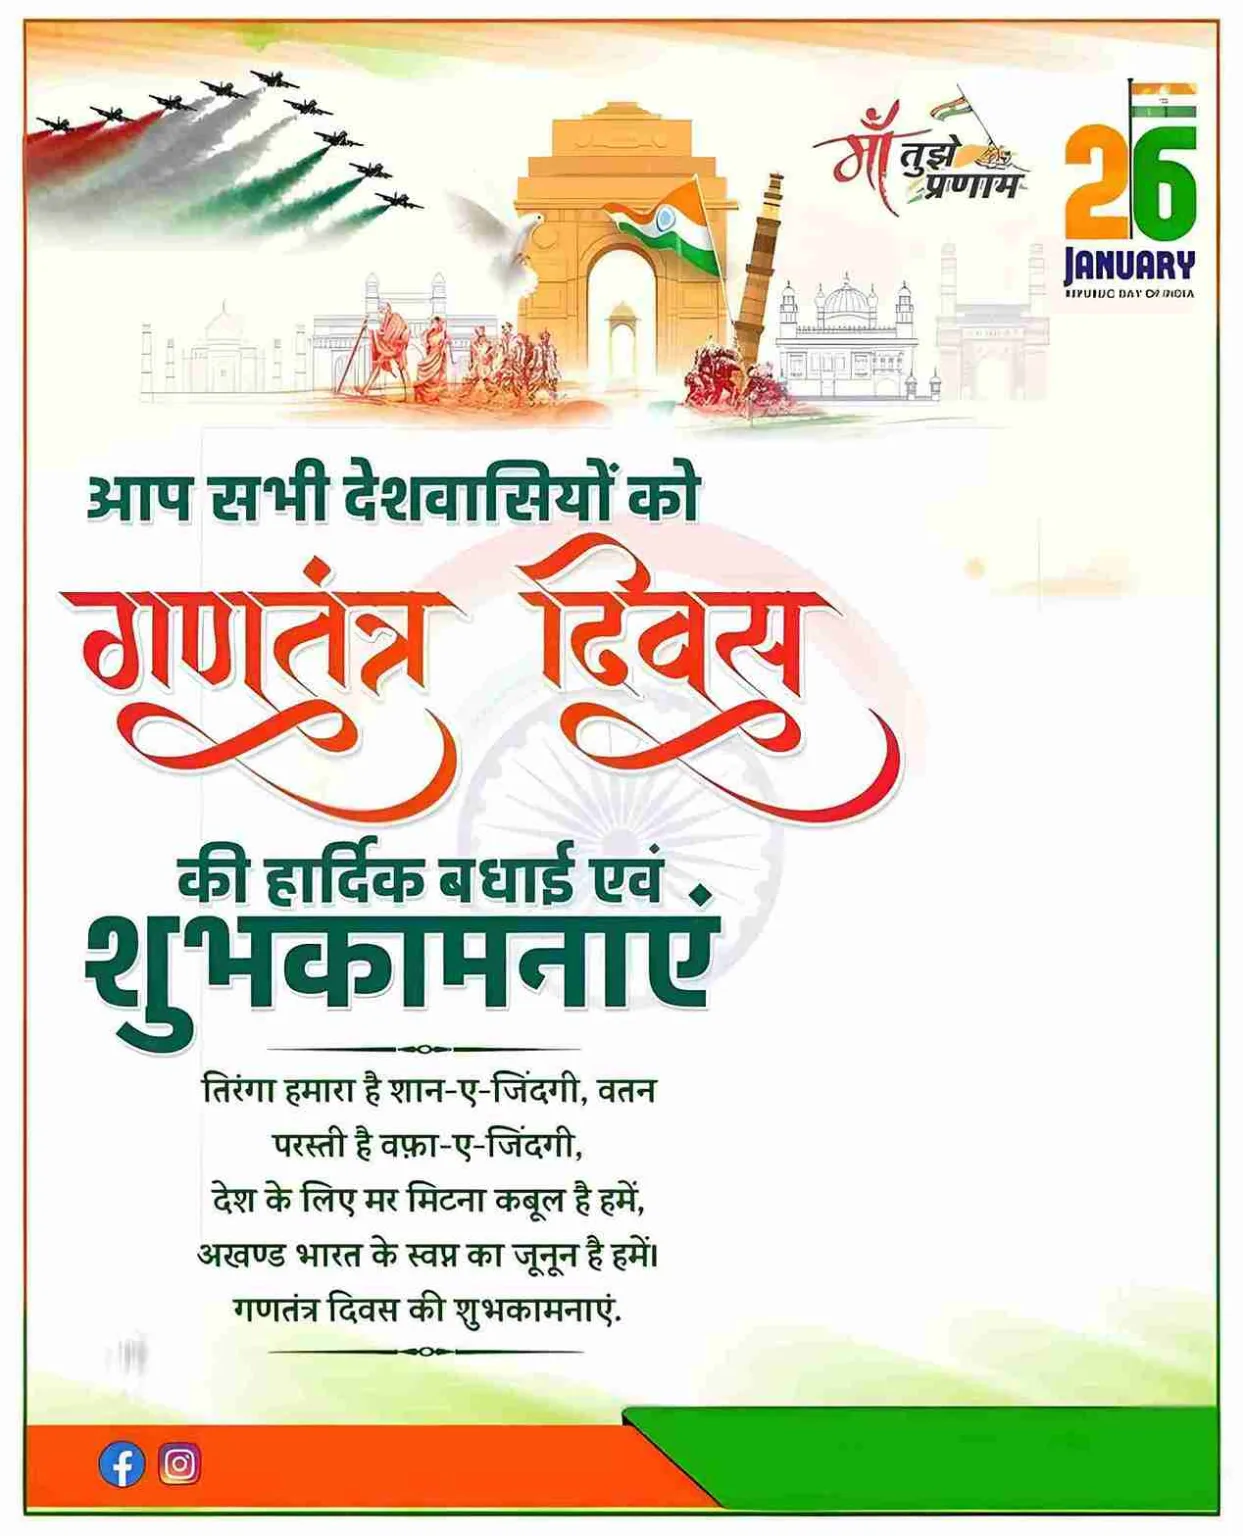 गणतंत्र दिवस की हार्दिक शुभकामनाएं (26 January Banner)